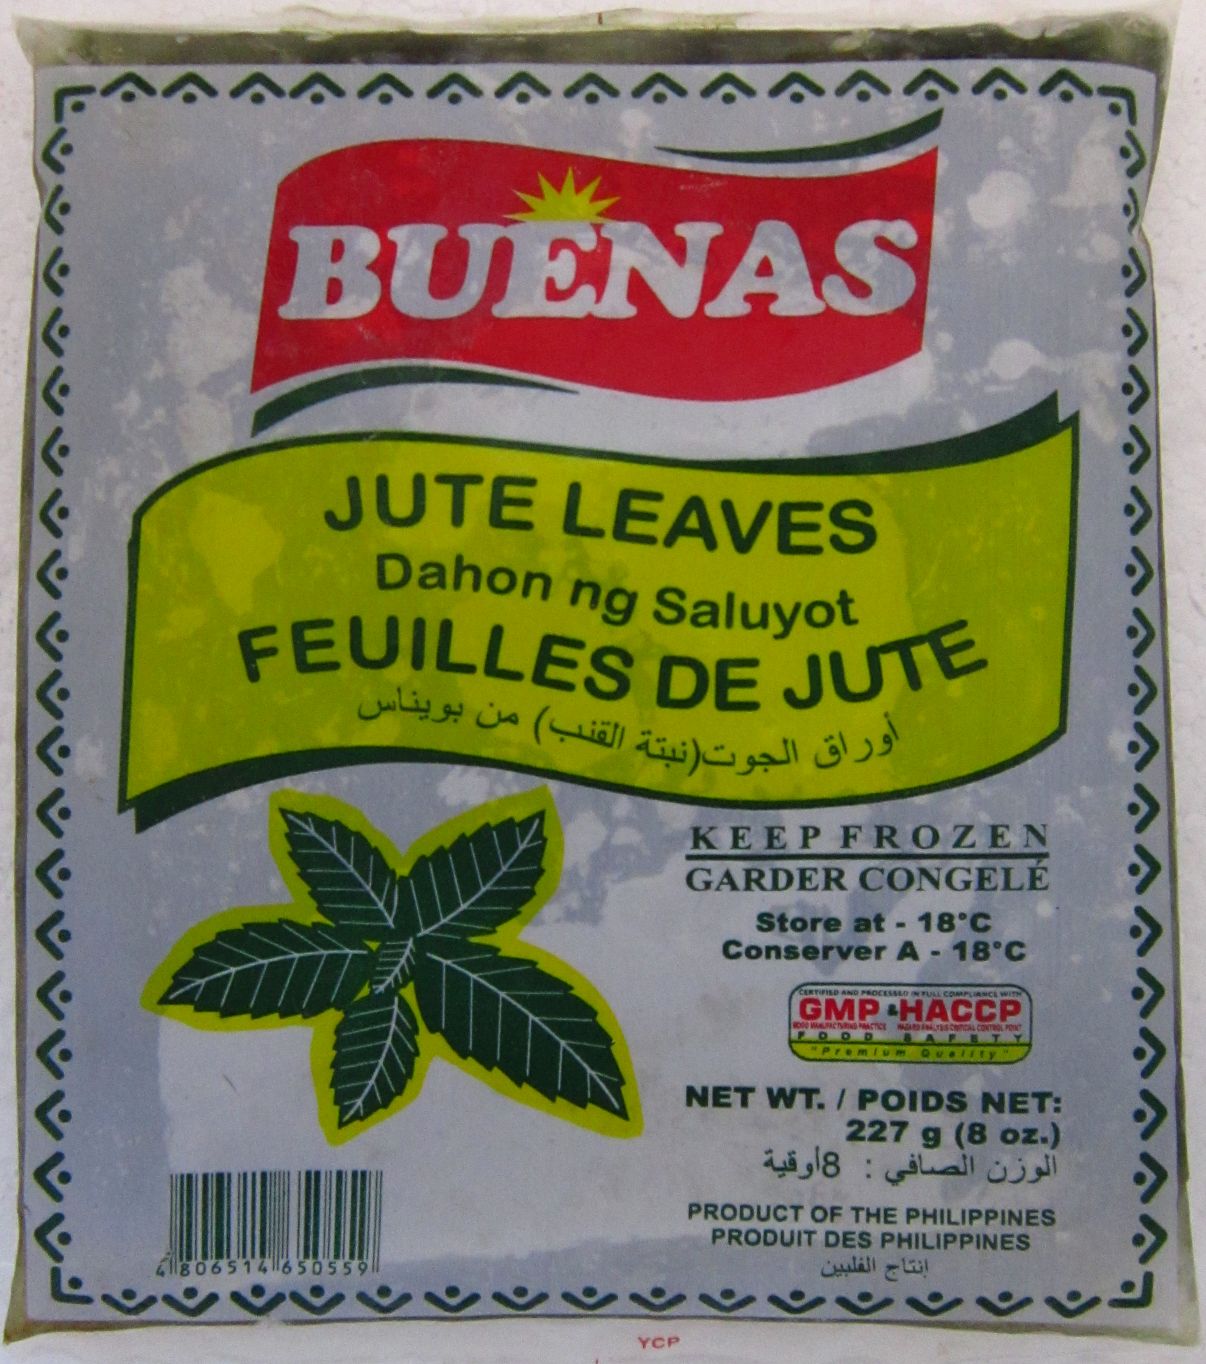 Buenas Jute Leaves Image